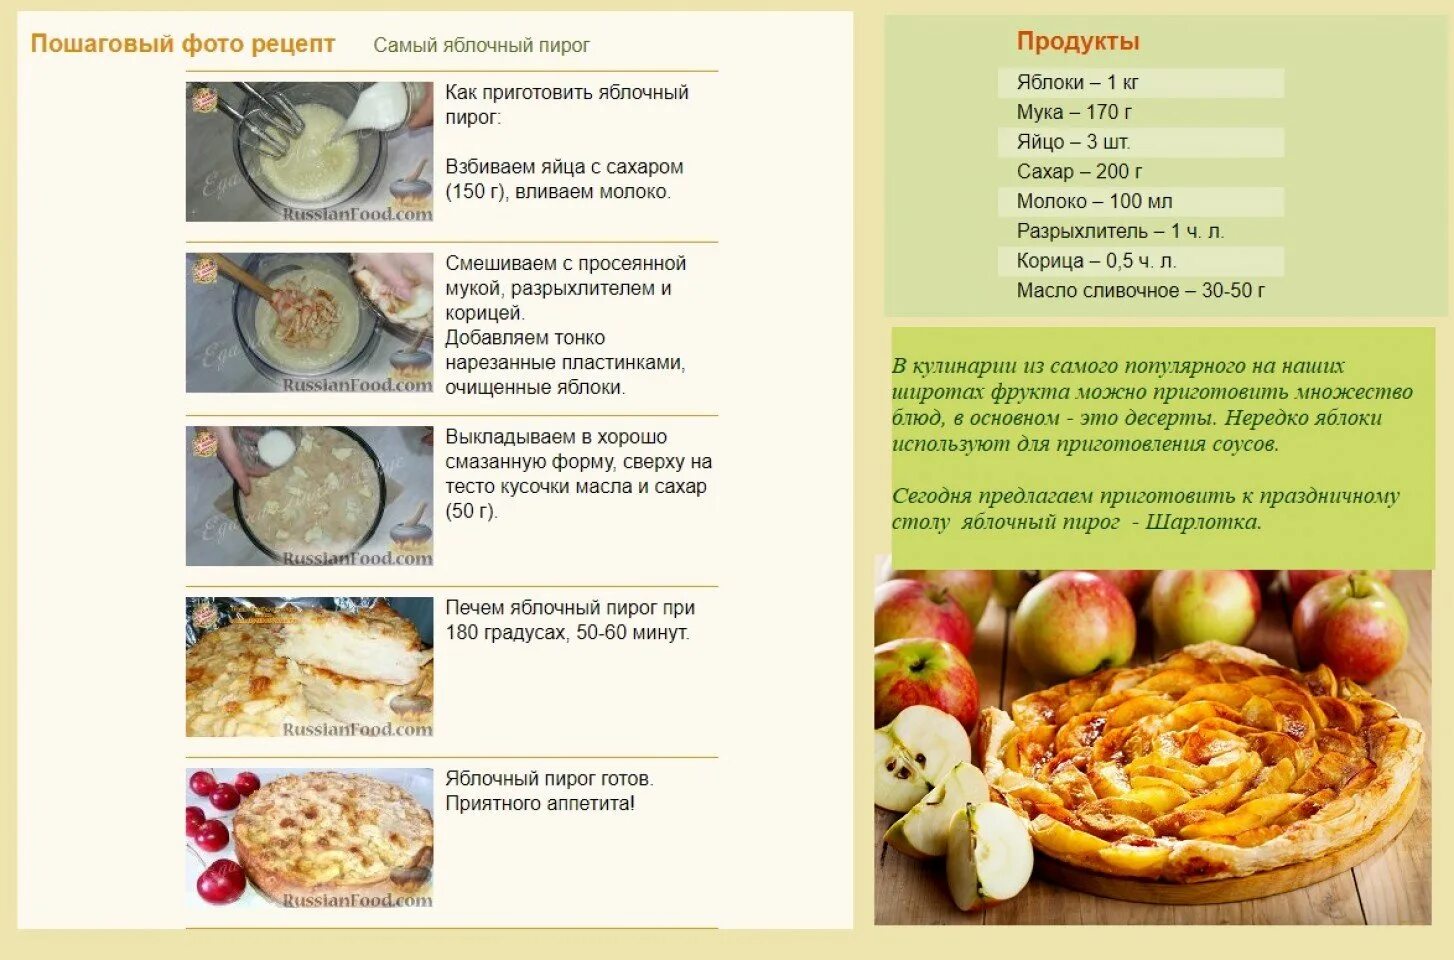 Технологическая карта приготовления пирога шарлотка. Шарлотка с яблоками рецепт картинка. Поэтапное приготовление шарлотки. Технологическая карта шарлотка с яблоками.